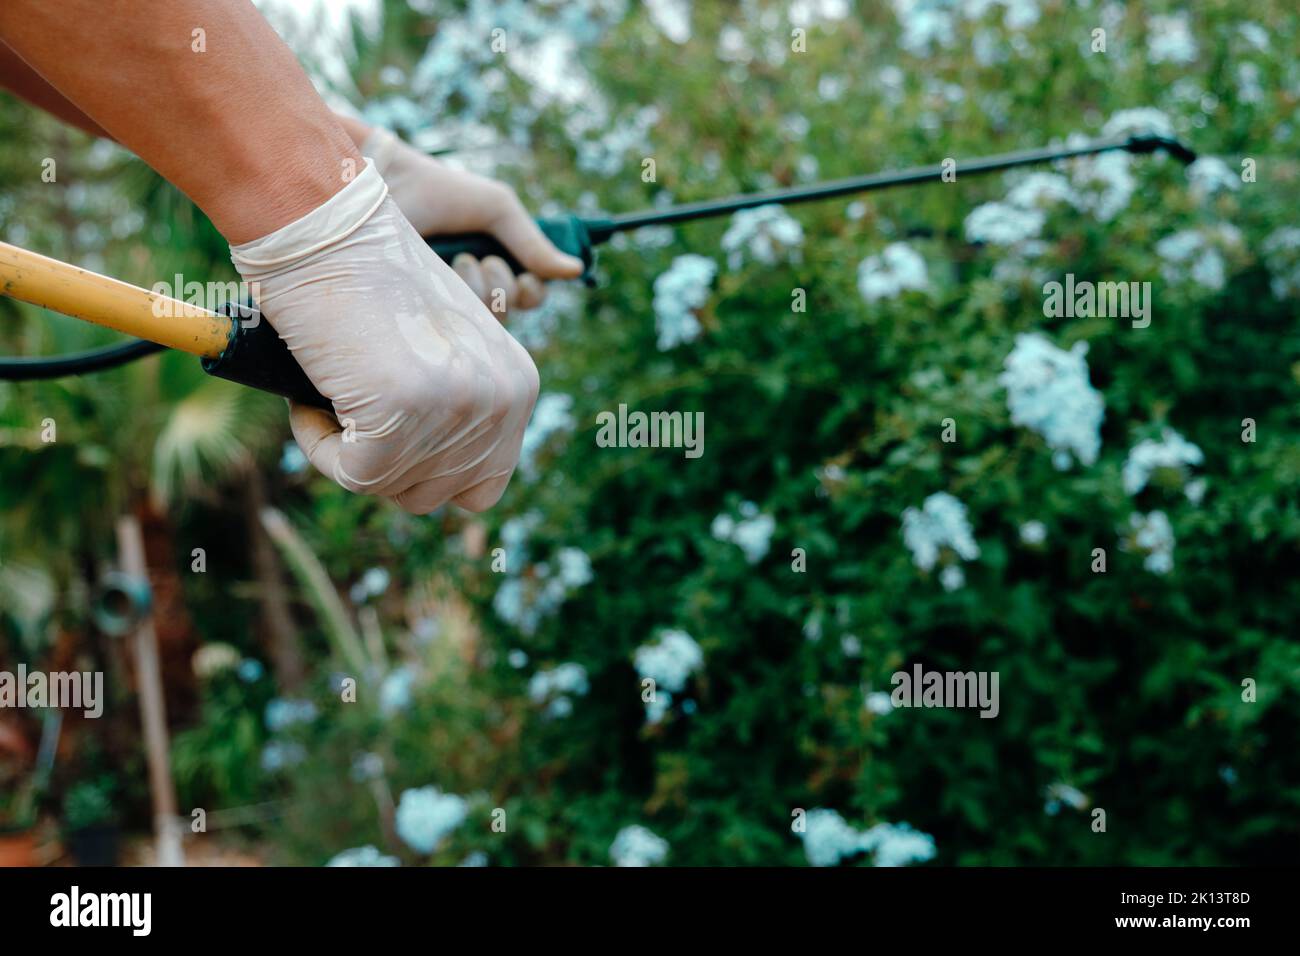 primer plano de un hombre, usando guantes protectores, en una granja, usando un rociador de mochila para rociar insecticida en un arbusto Foto de stock